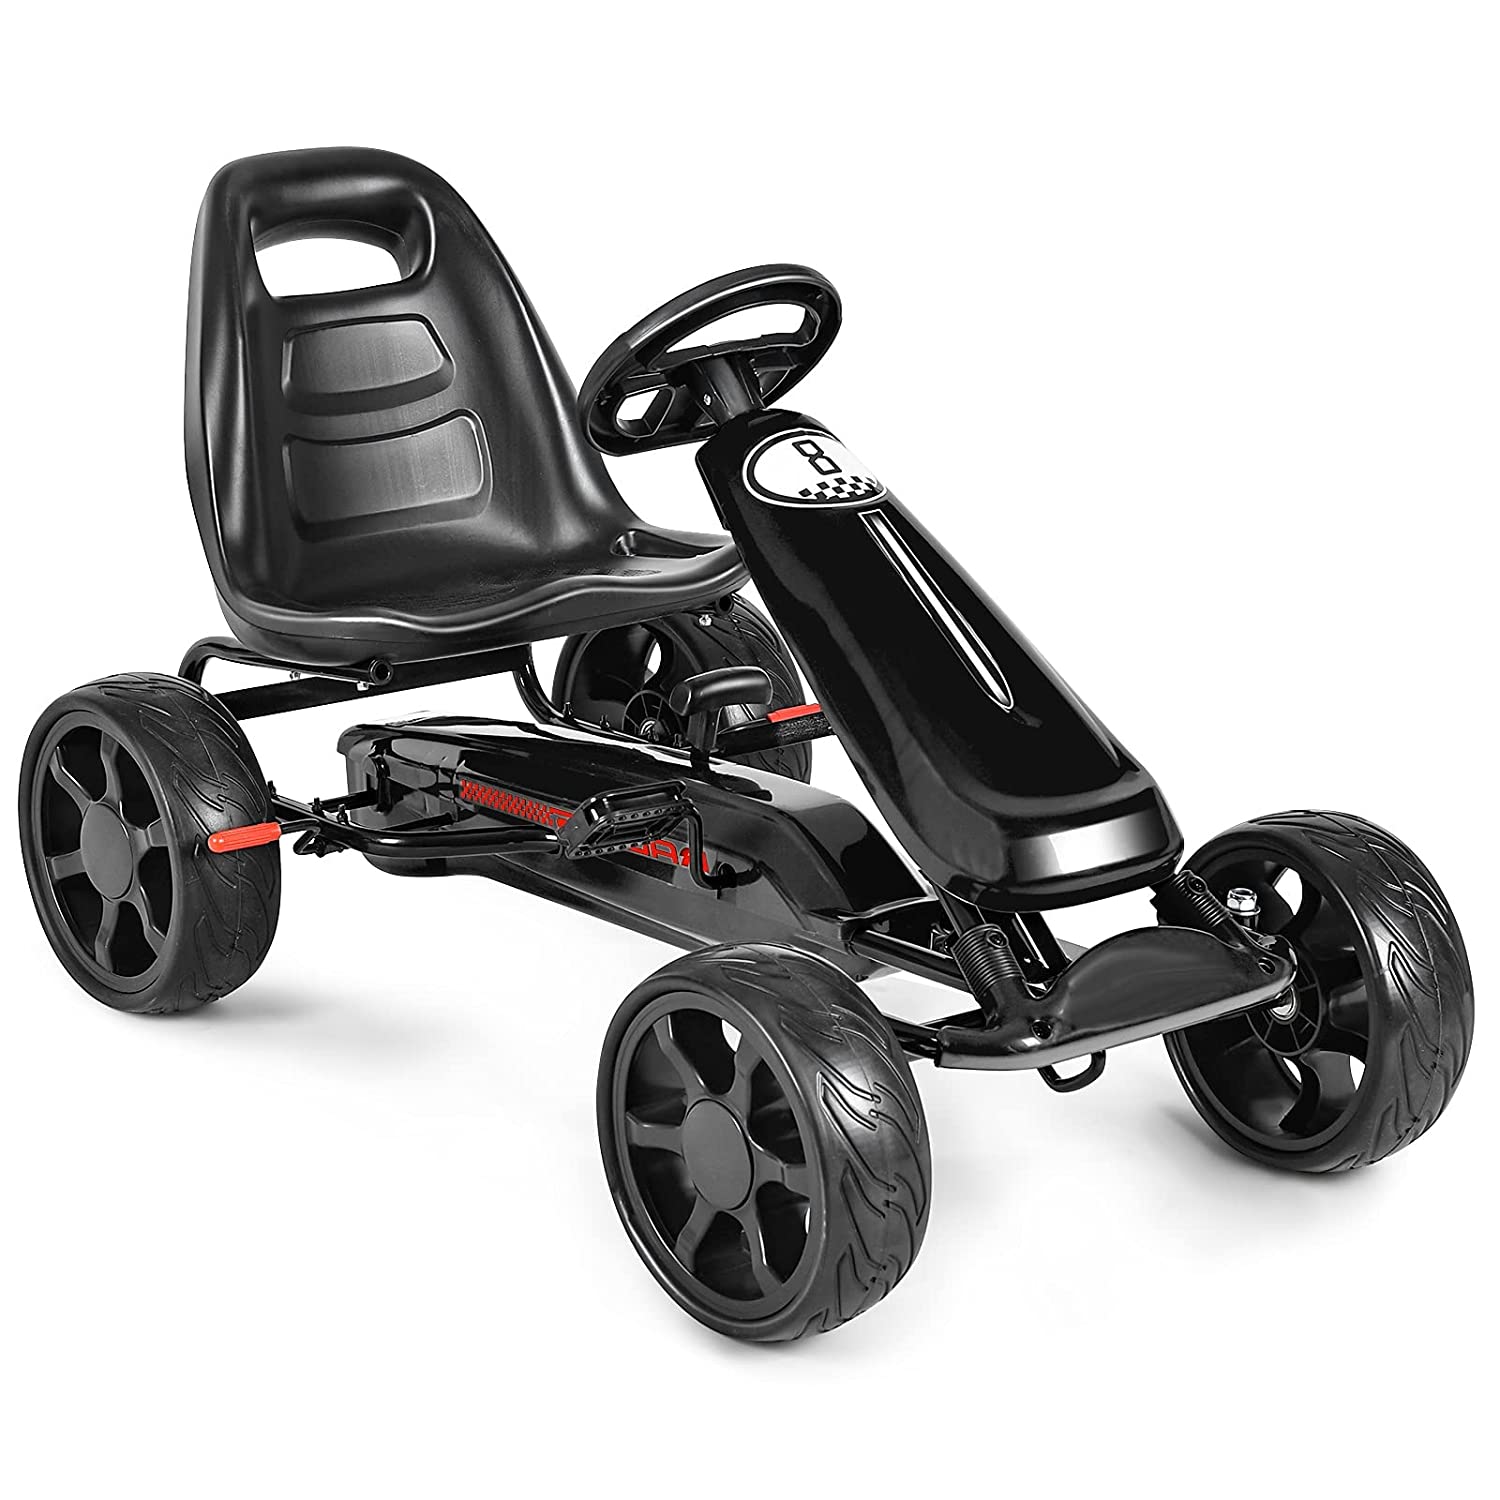 go-karts for kids - Electric Go-Kart